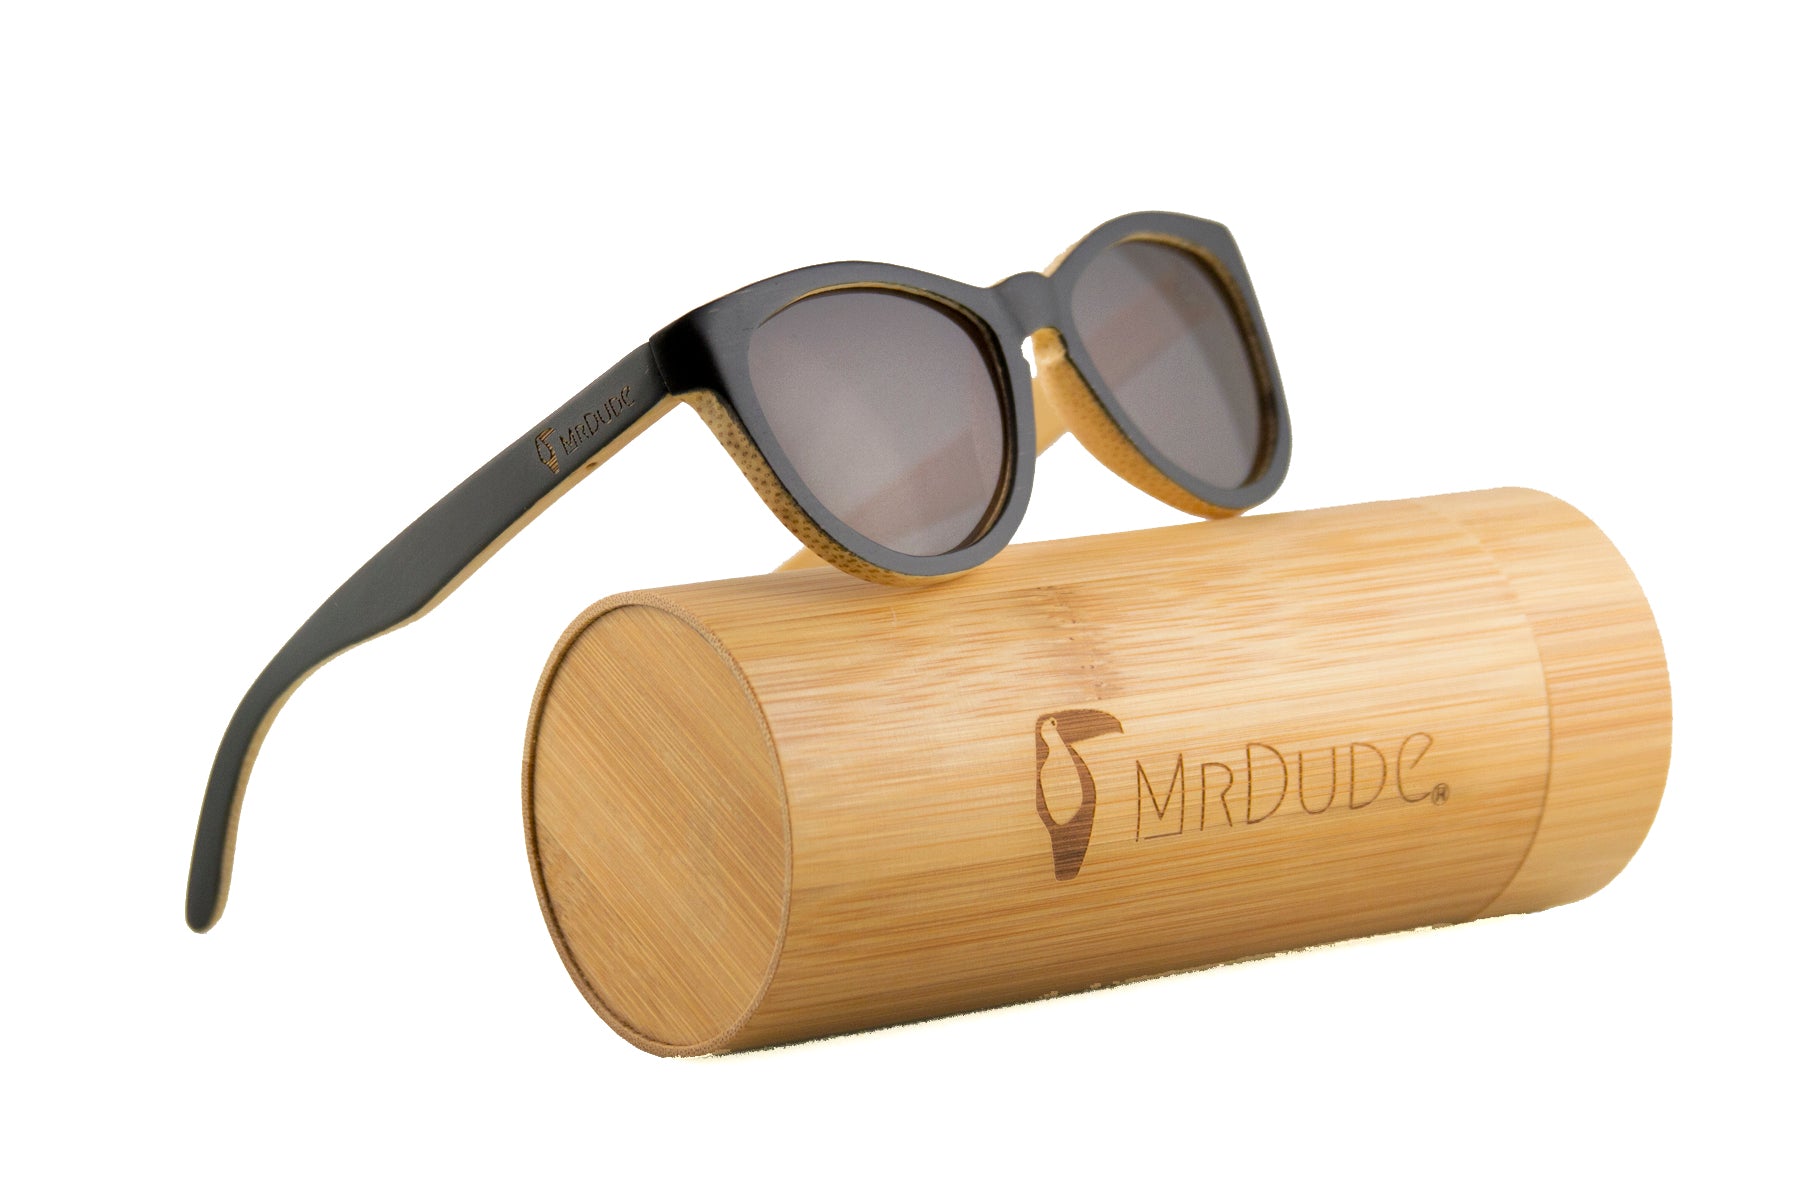 Black "Twisted" Polarized Bamboo Sunglasses